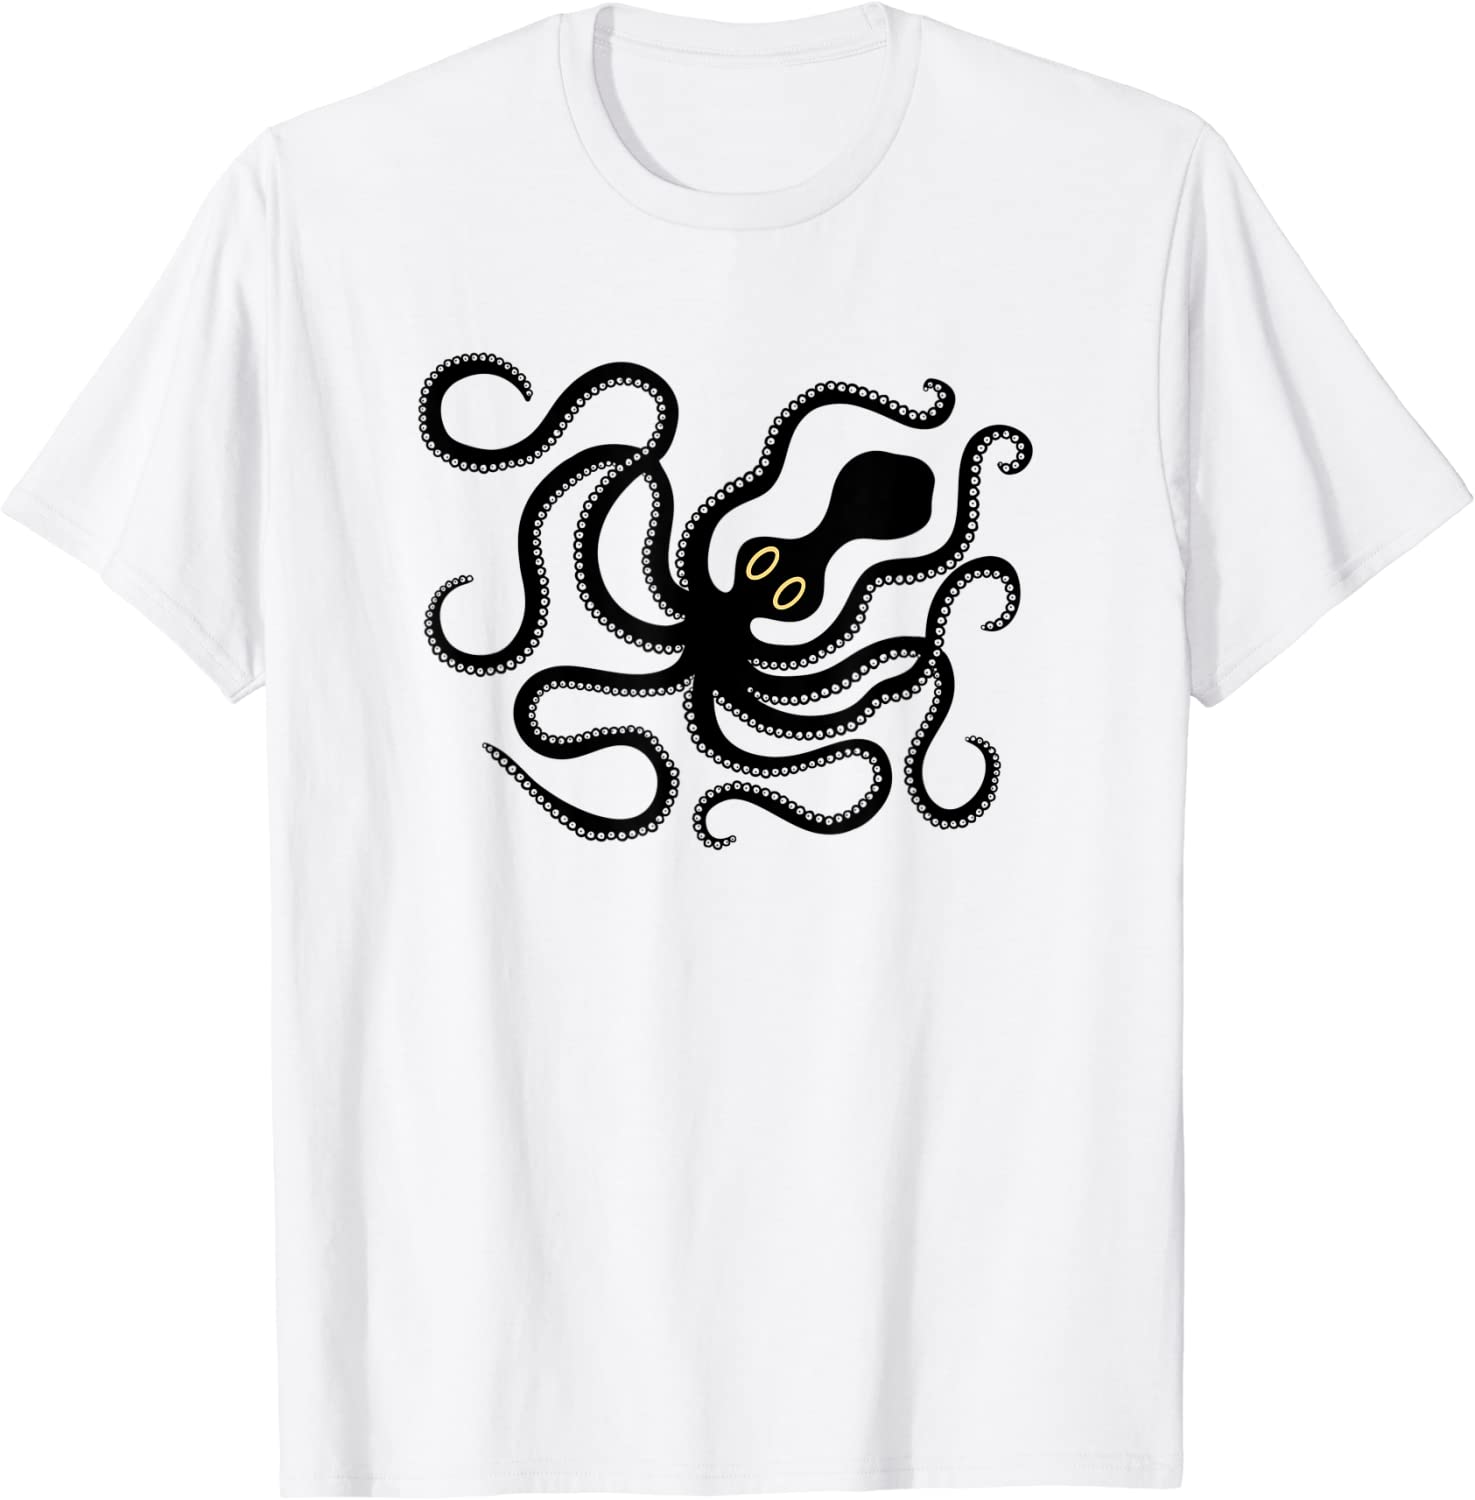 Minoan Octopus Tee Shirt - ShirtElephant Office